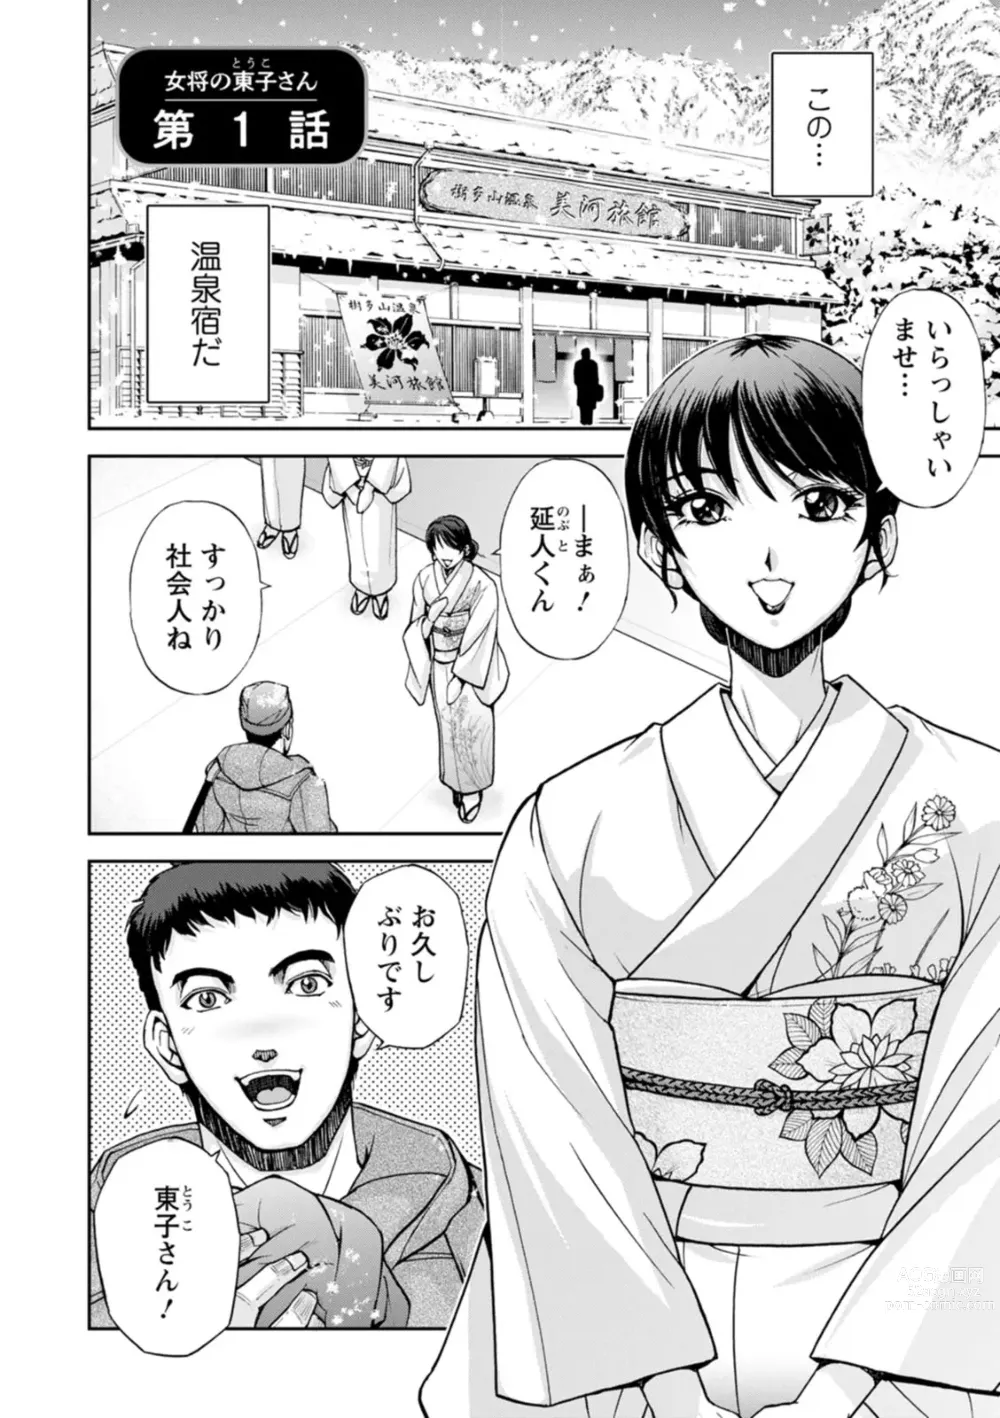 Page 8 of manga Okami no Touko-san - Miss. Touko, a Landlady of a Hot spring inn